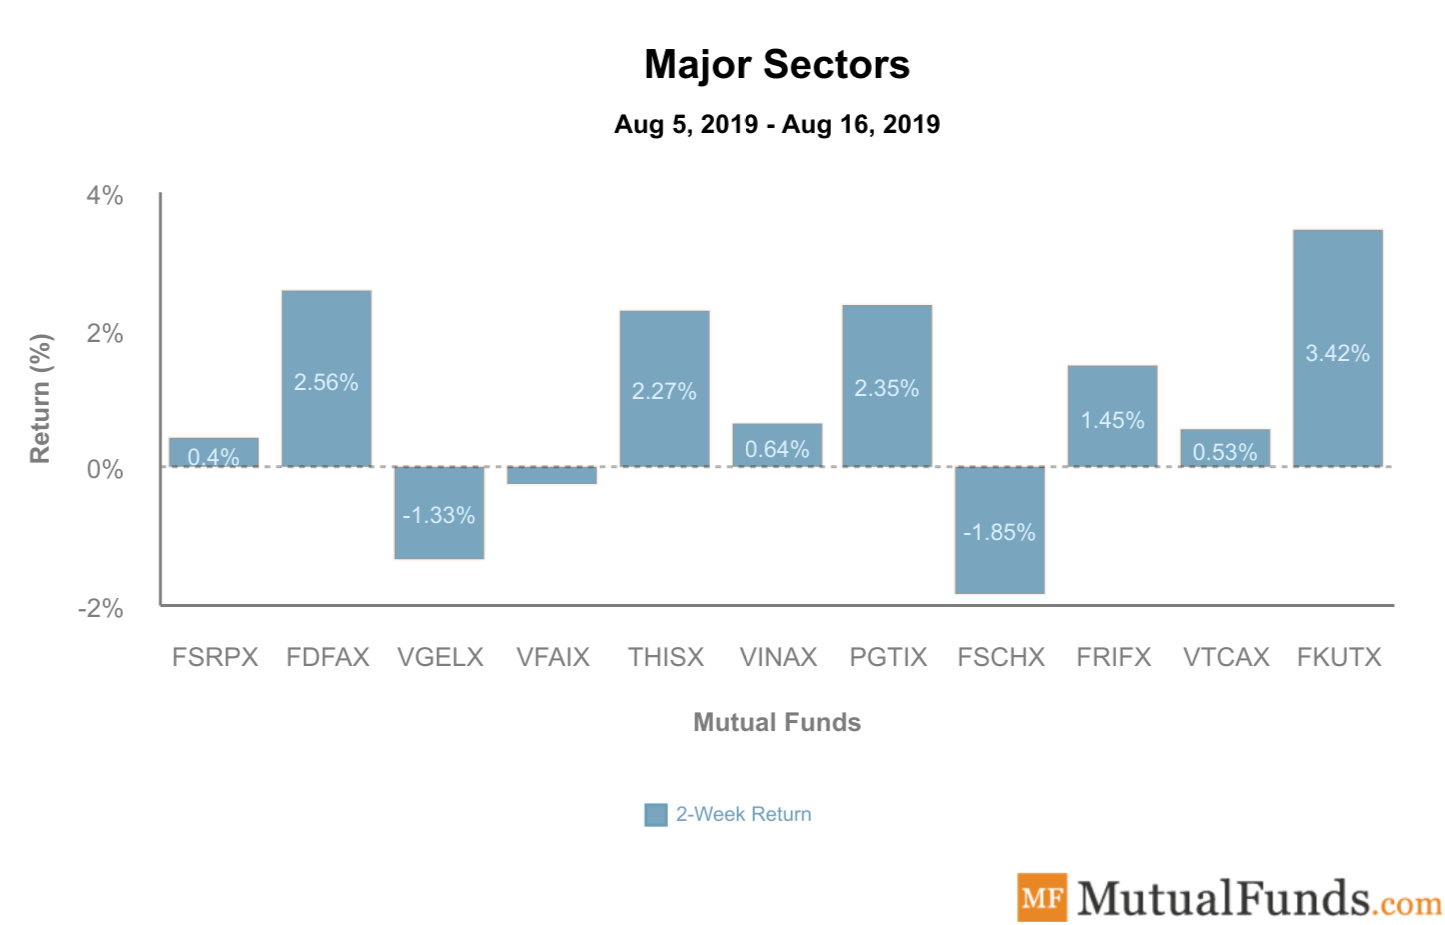 Major sectors chart